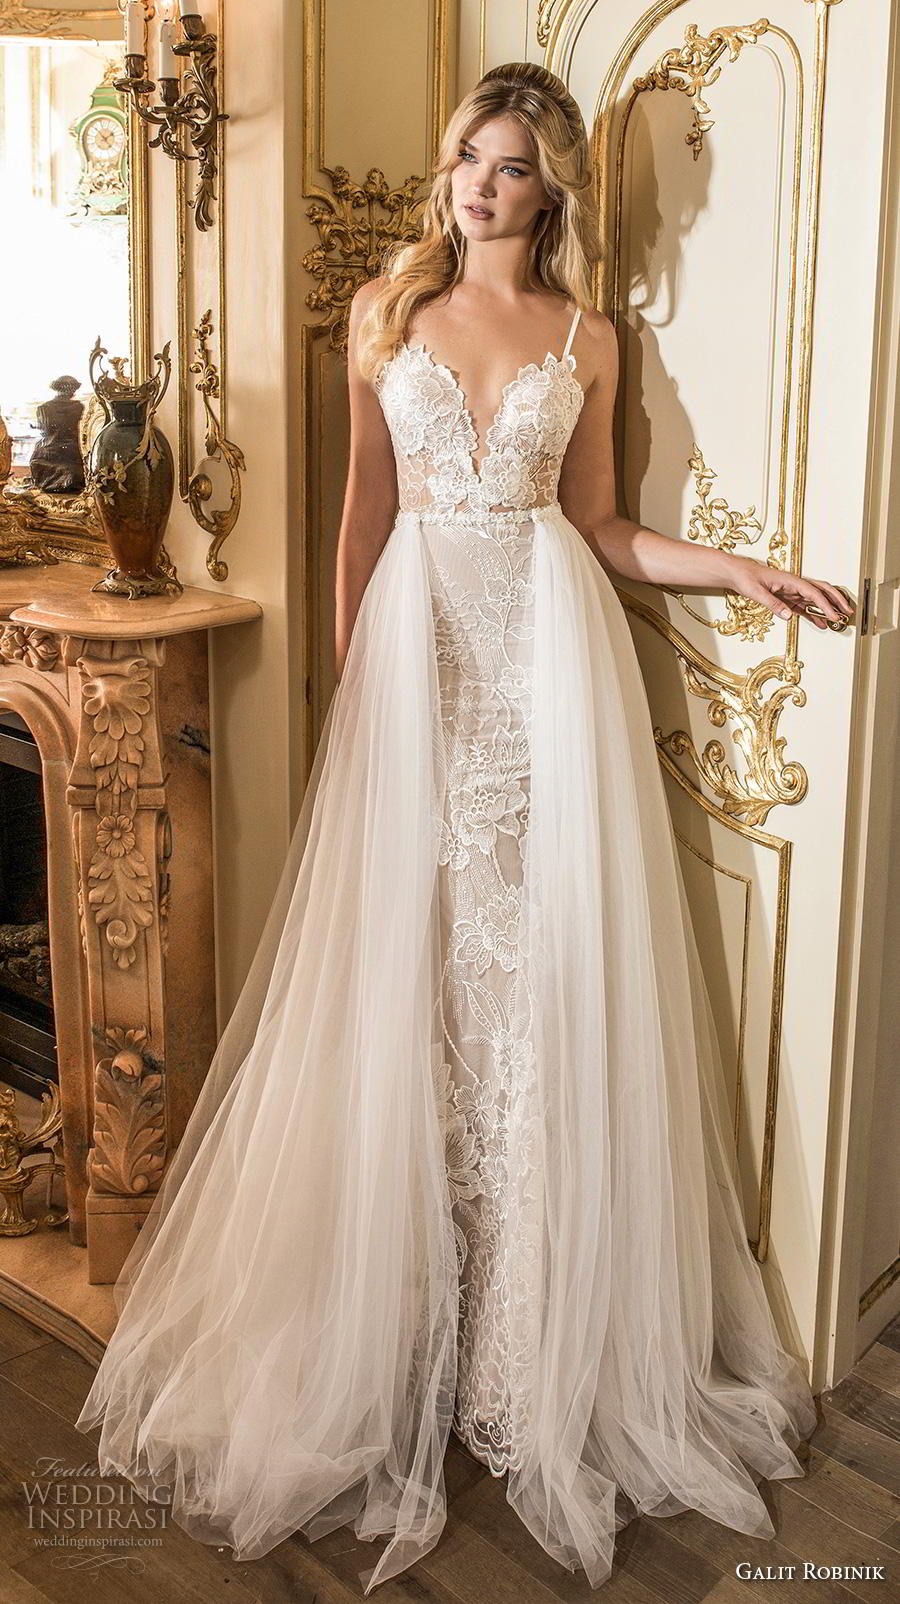 Galit Robinik 2019 Wedding Dresses — “The Princess” Bridal Collection ...